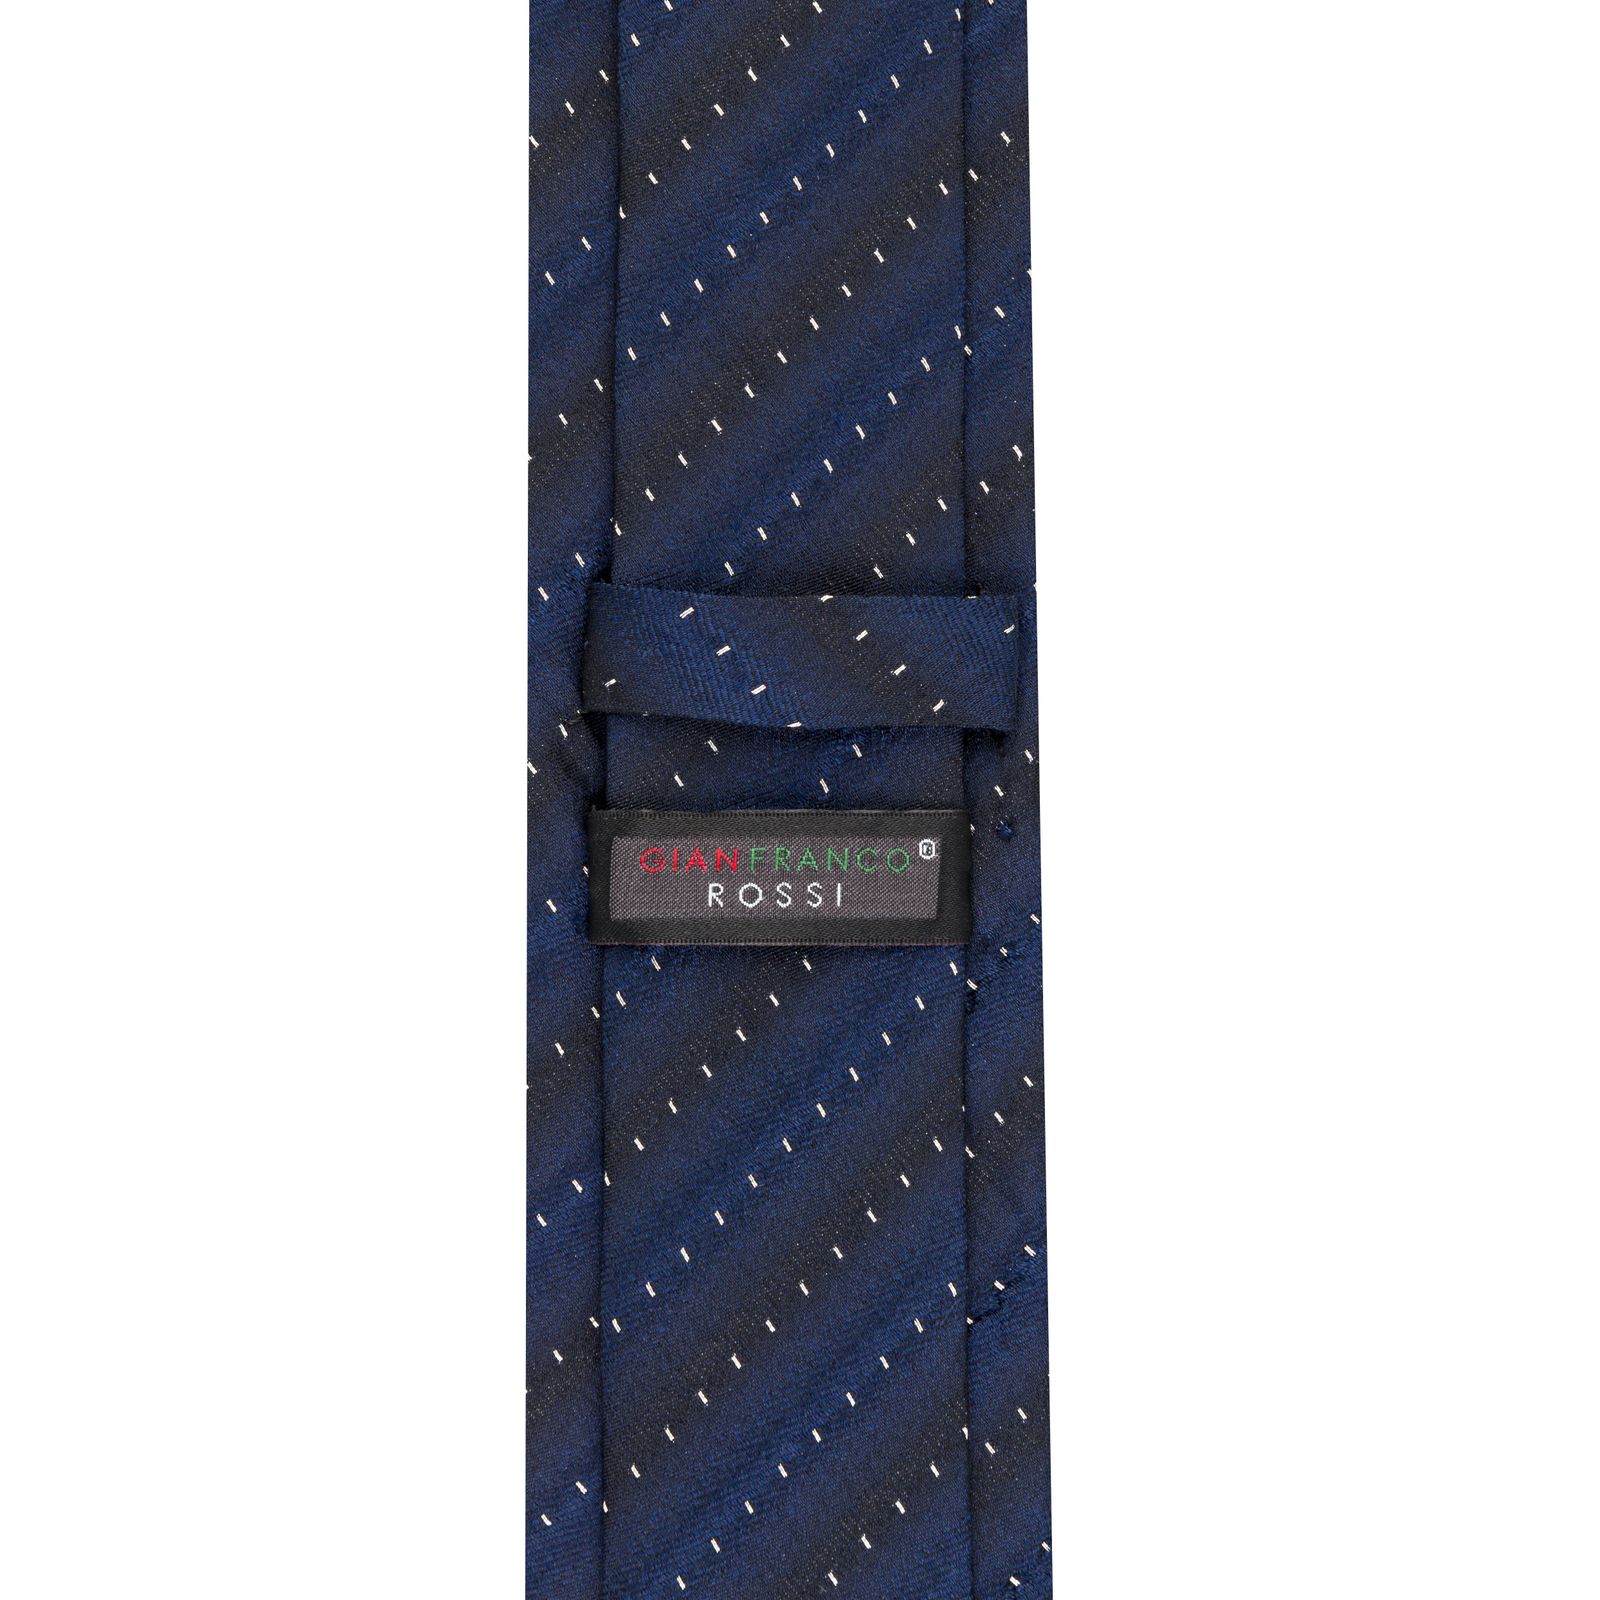  کراوات مردانه جیان فرانکو روسی مدل GF-PO492-DB -  - 4